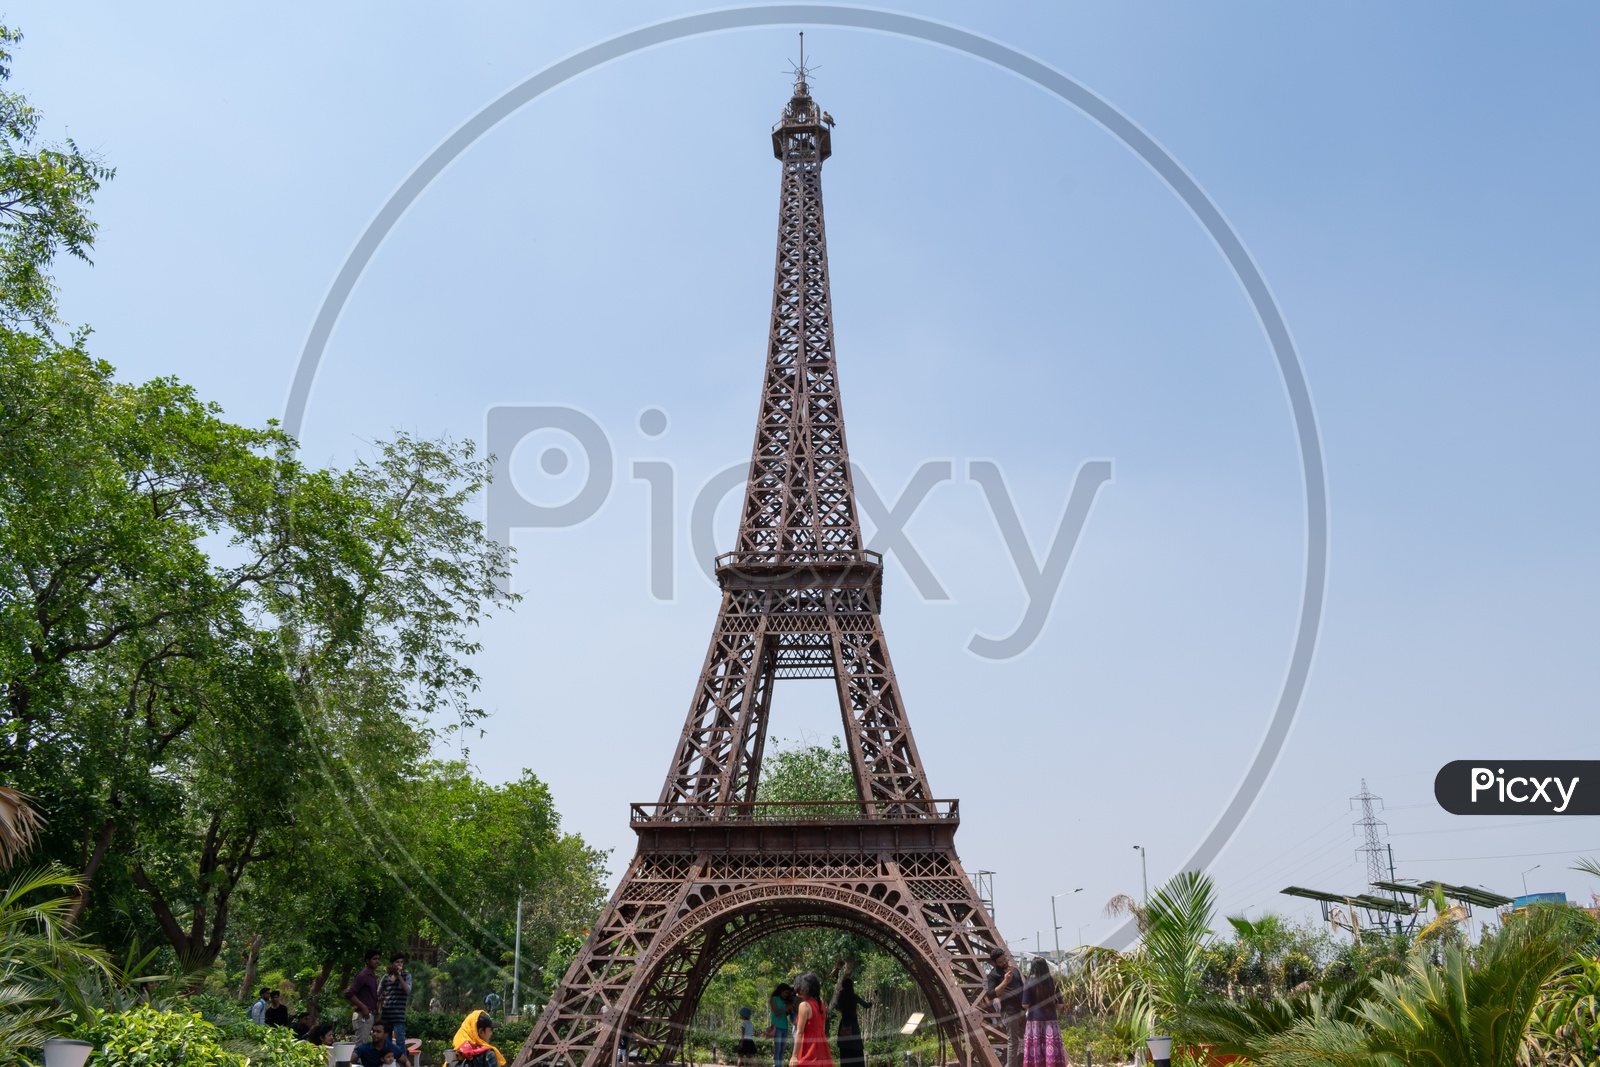 Replica of Paris’s Eiffel Tower, Waste to Wonder, Delhi